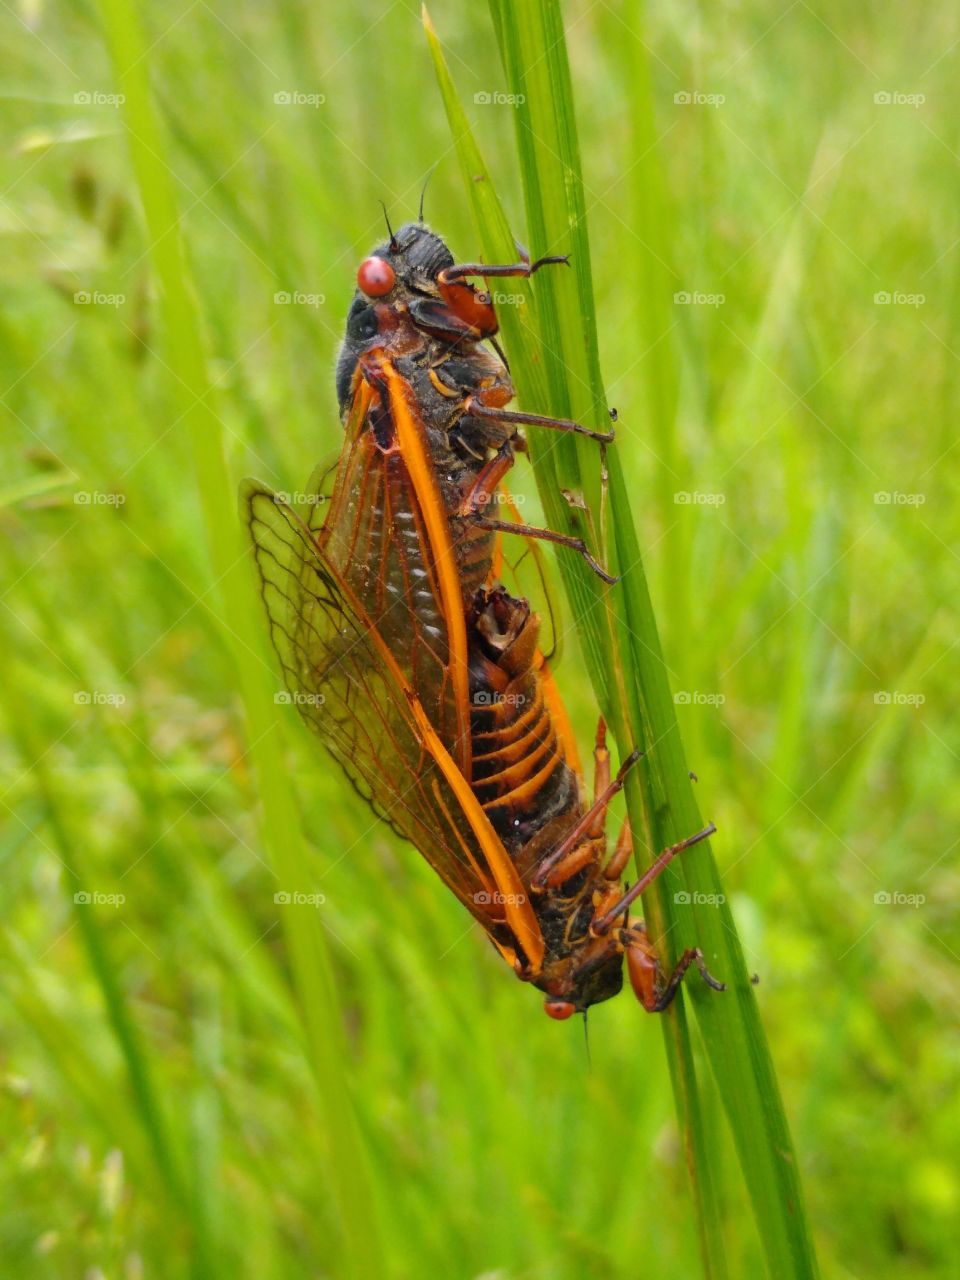 Brood X cicada mating